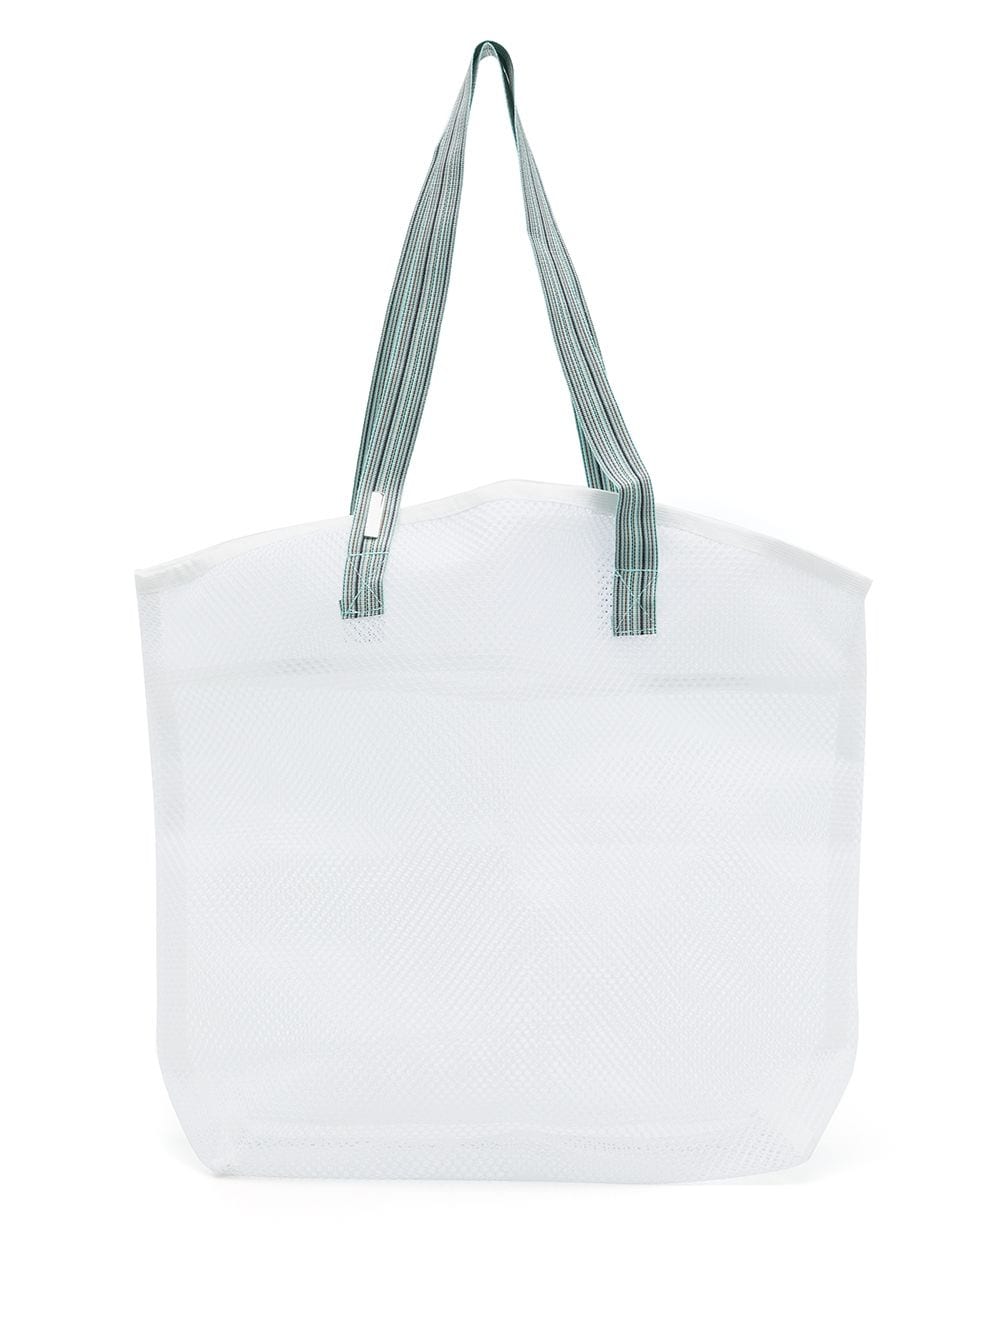 sarah chofakian sac cabas tela en mesh - blanc